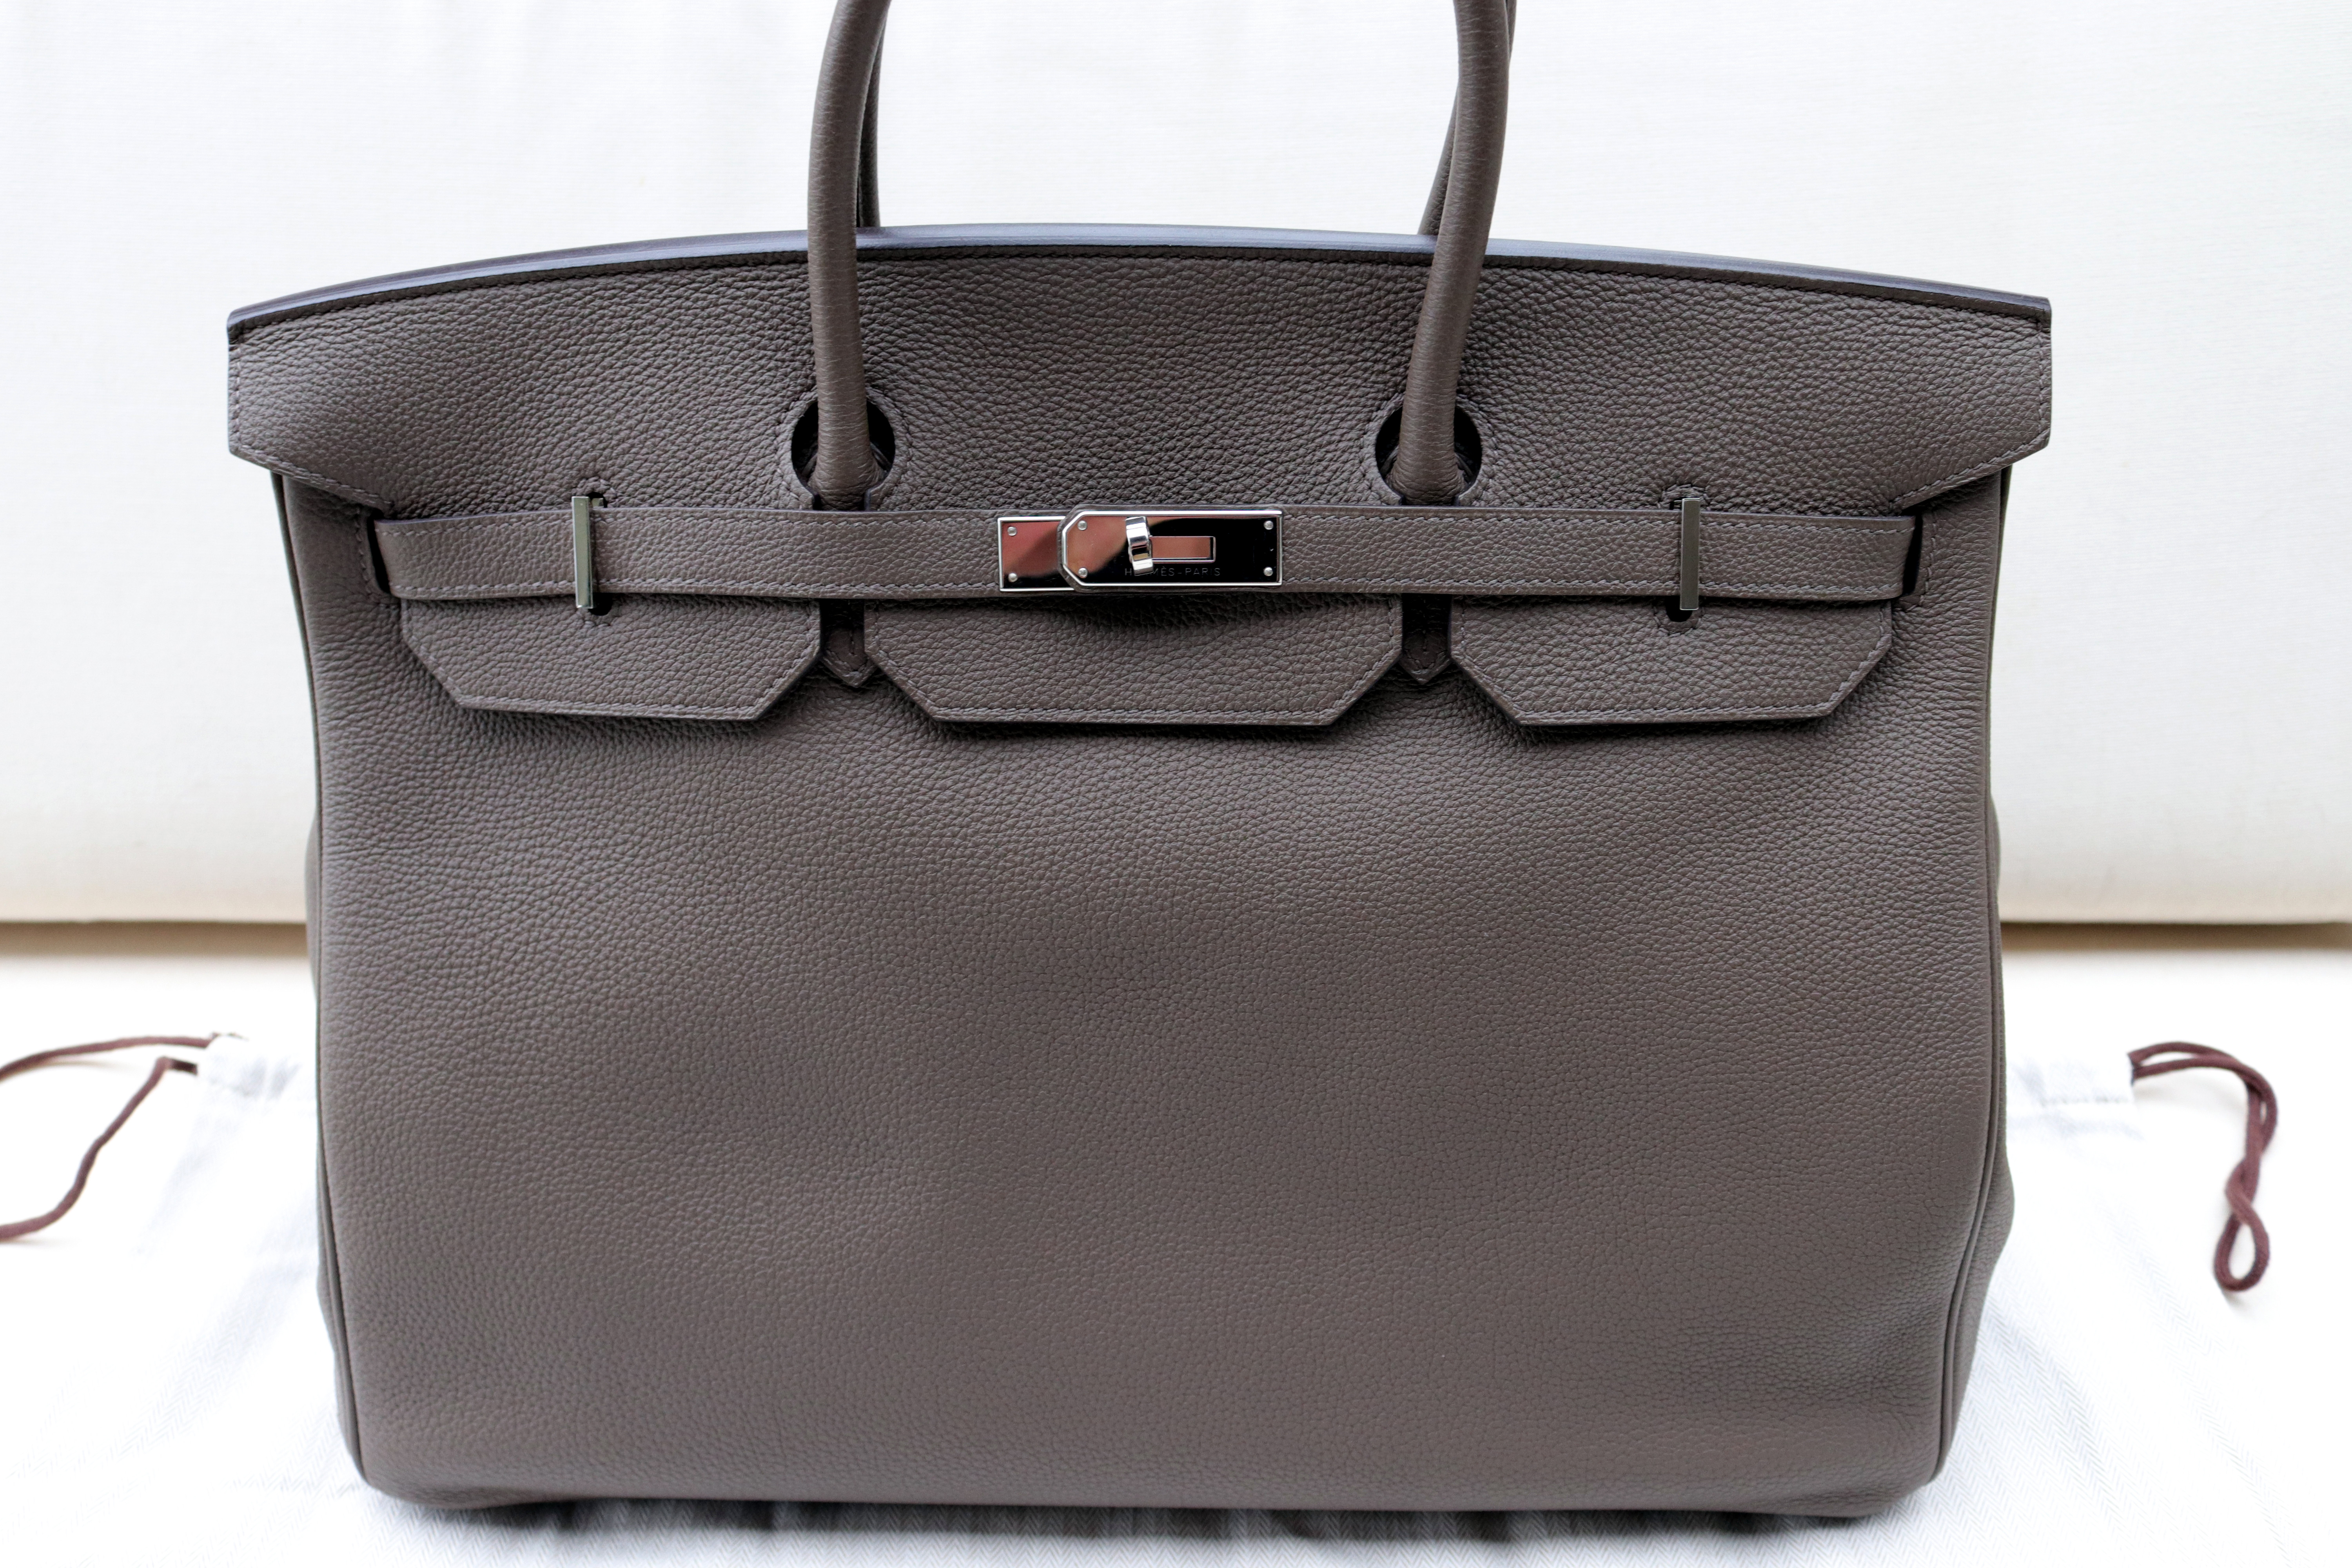 Hermès 2003 Pre-owned Birkin 40 Tote Bag